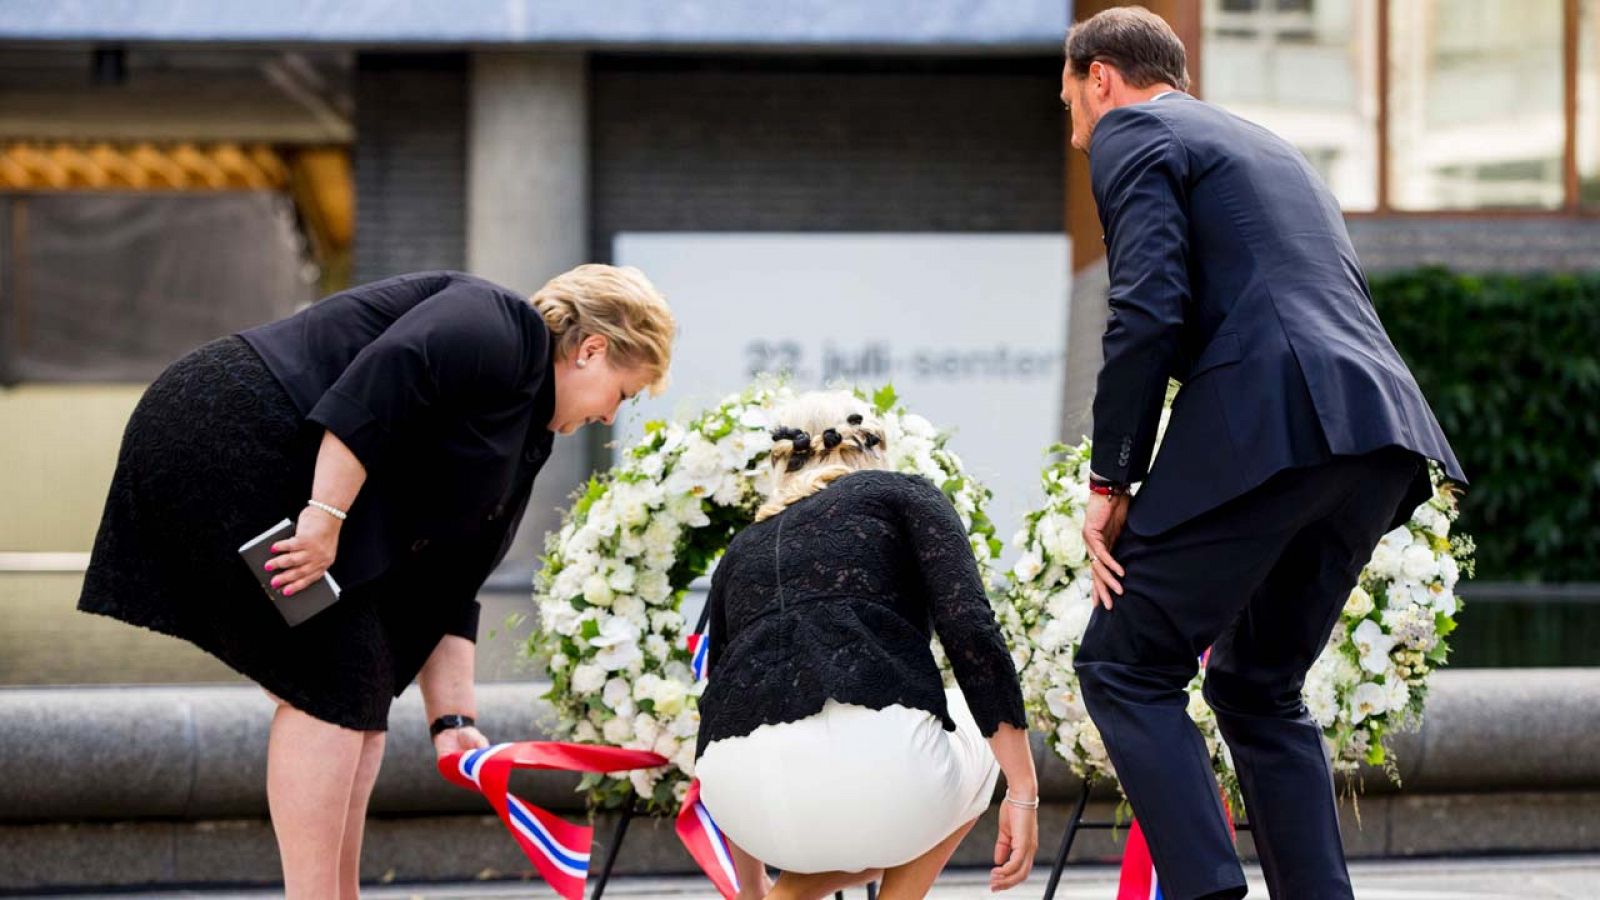 El primer ministro noruego, Erna Solberg (izquierda), la princesa Mette-Marit (centro) y el pr&iacute;ncipe Haakon (derecha) depositan una ofrenda florar durante una ceremonia en la sede del gobierno de Oslo este viernes.